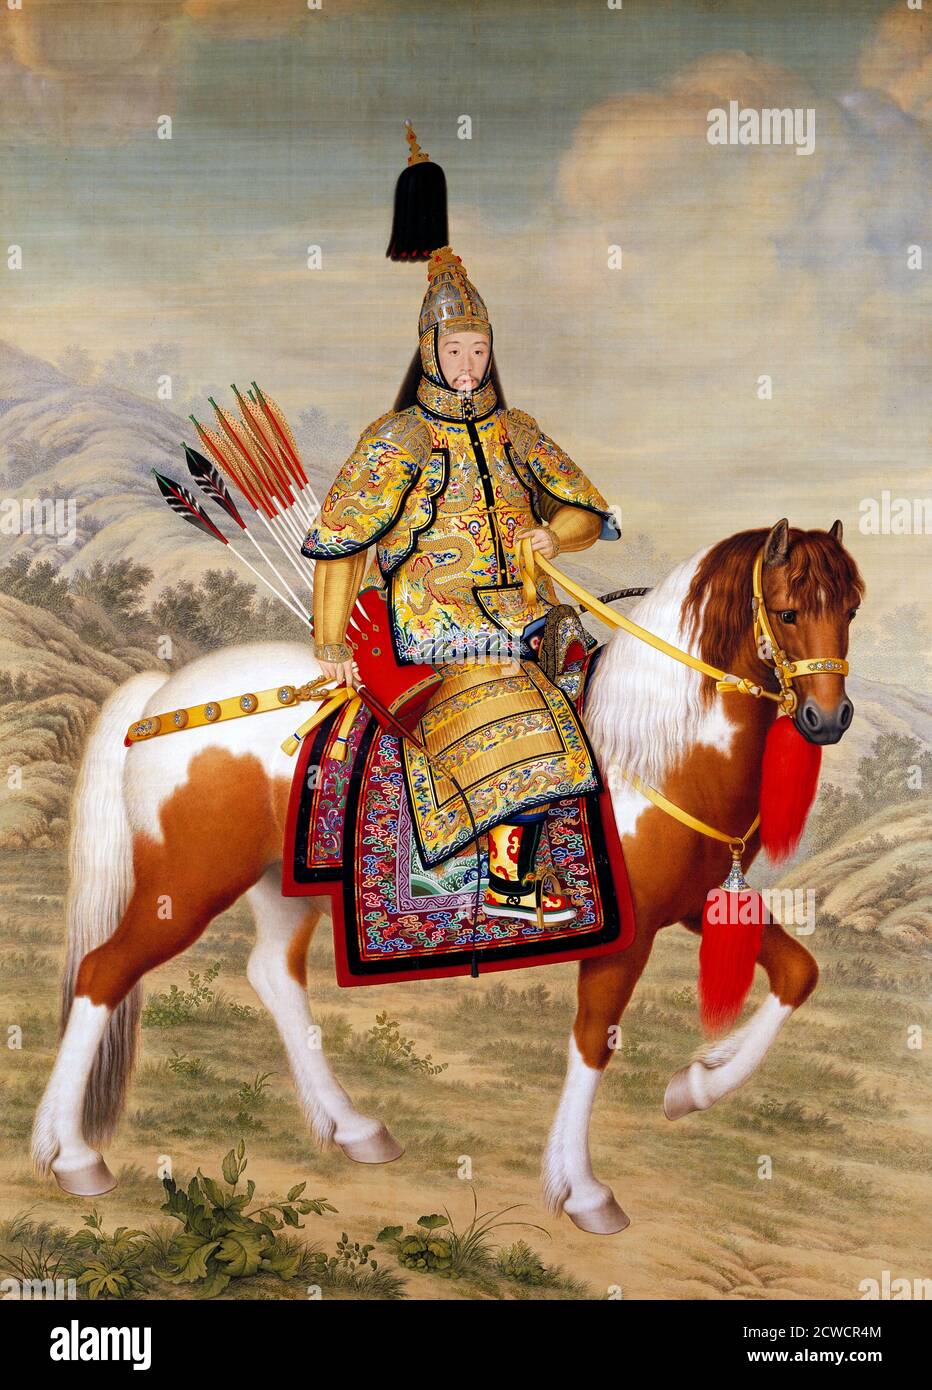 L'Imperatore Qianlong in armatura Ceremoniale a cavallo di Giuseppe Castiglione (1688-1766, nome cinese Lang Shining), inchiostro e colore sulla seta, 1758, l'Imperatore Qianlong (1711-1799) fu il 6° Imperatore della dinastia Qing in Cina Foto Stock